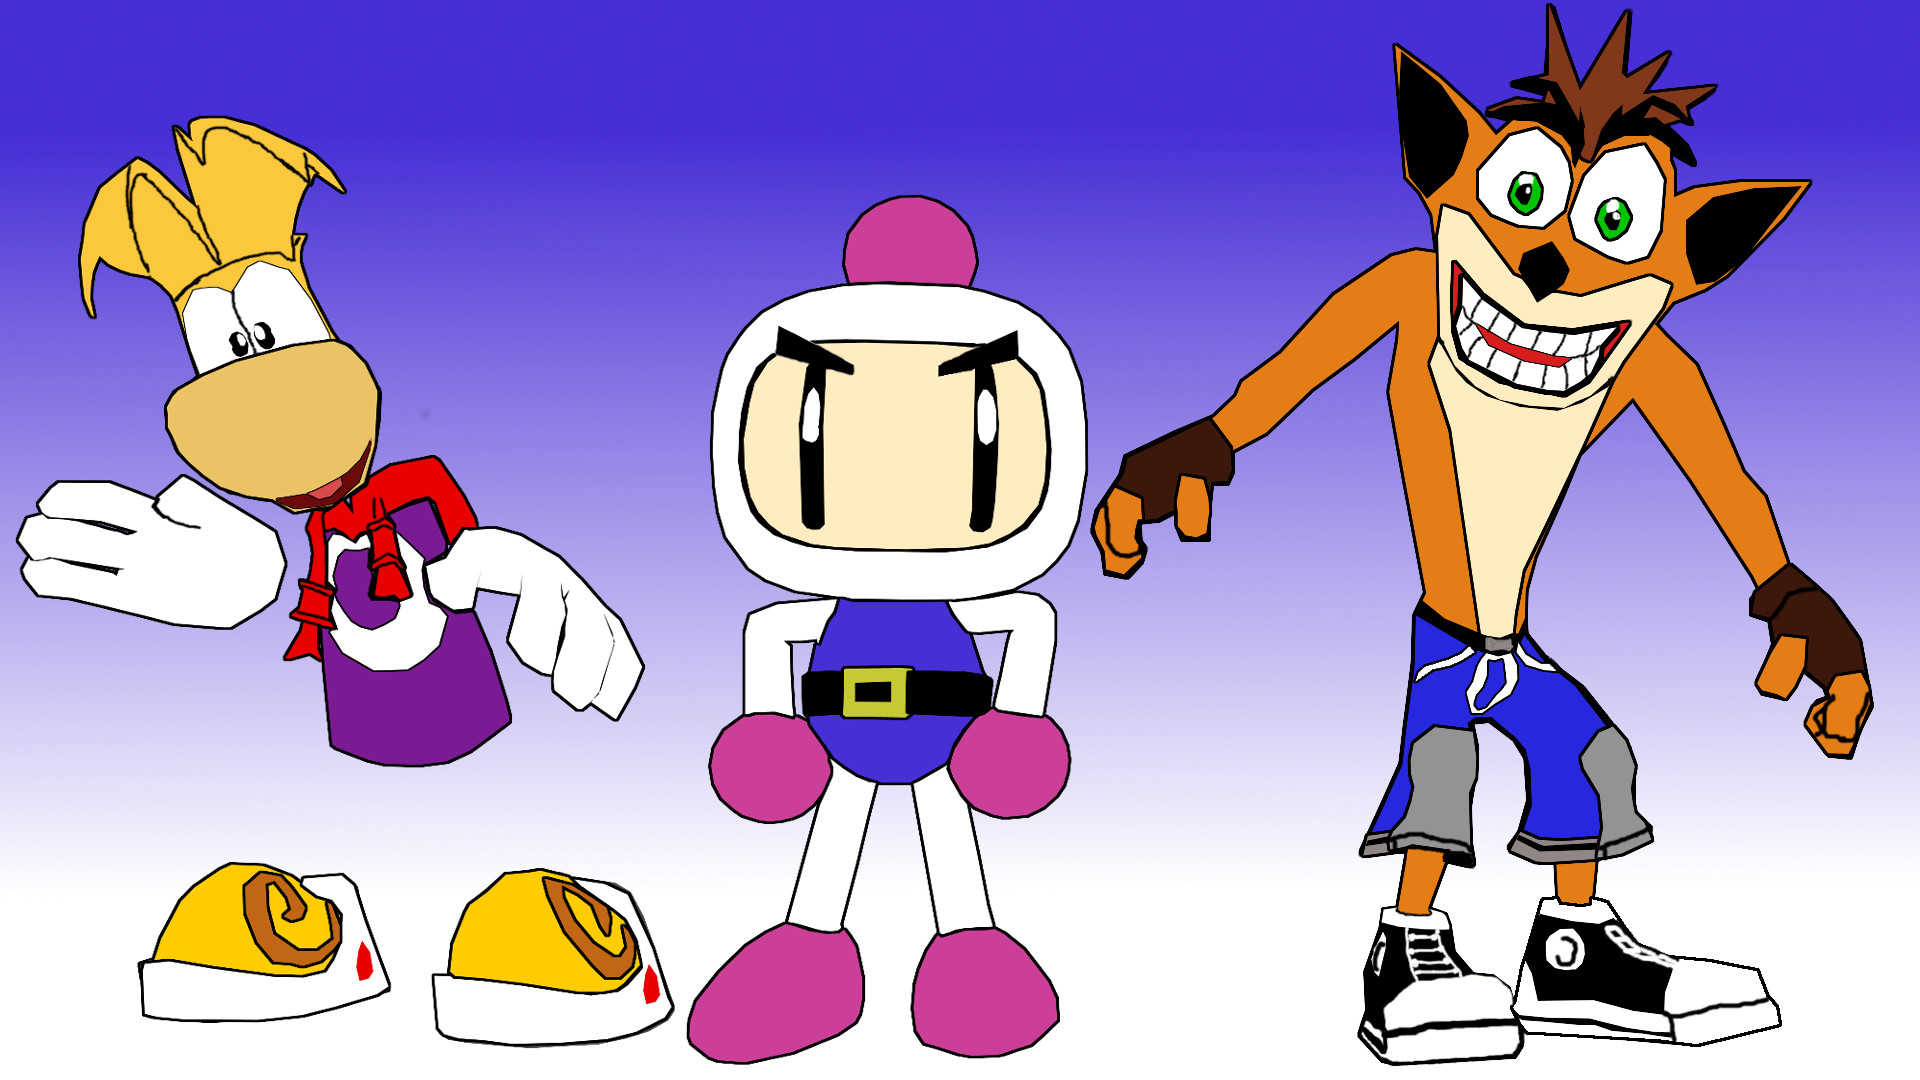 1920x1080 ... Favorite characters Rayman Bomberman and Crash by kongzillarex619